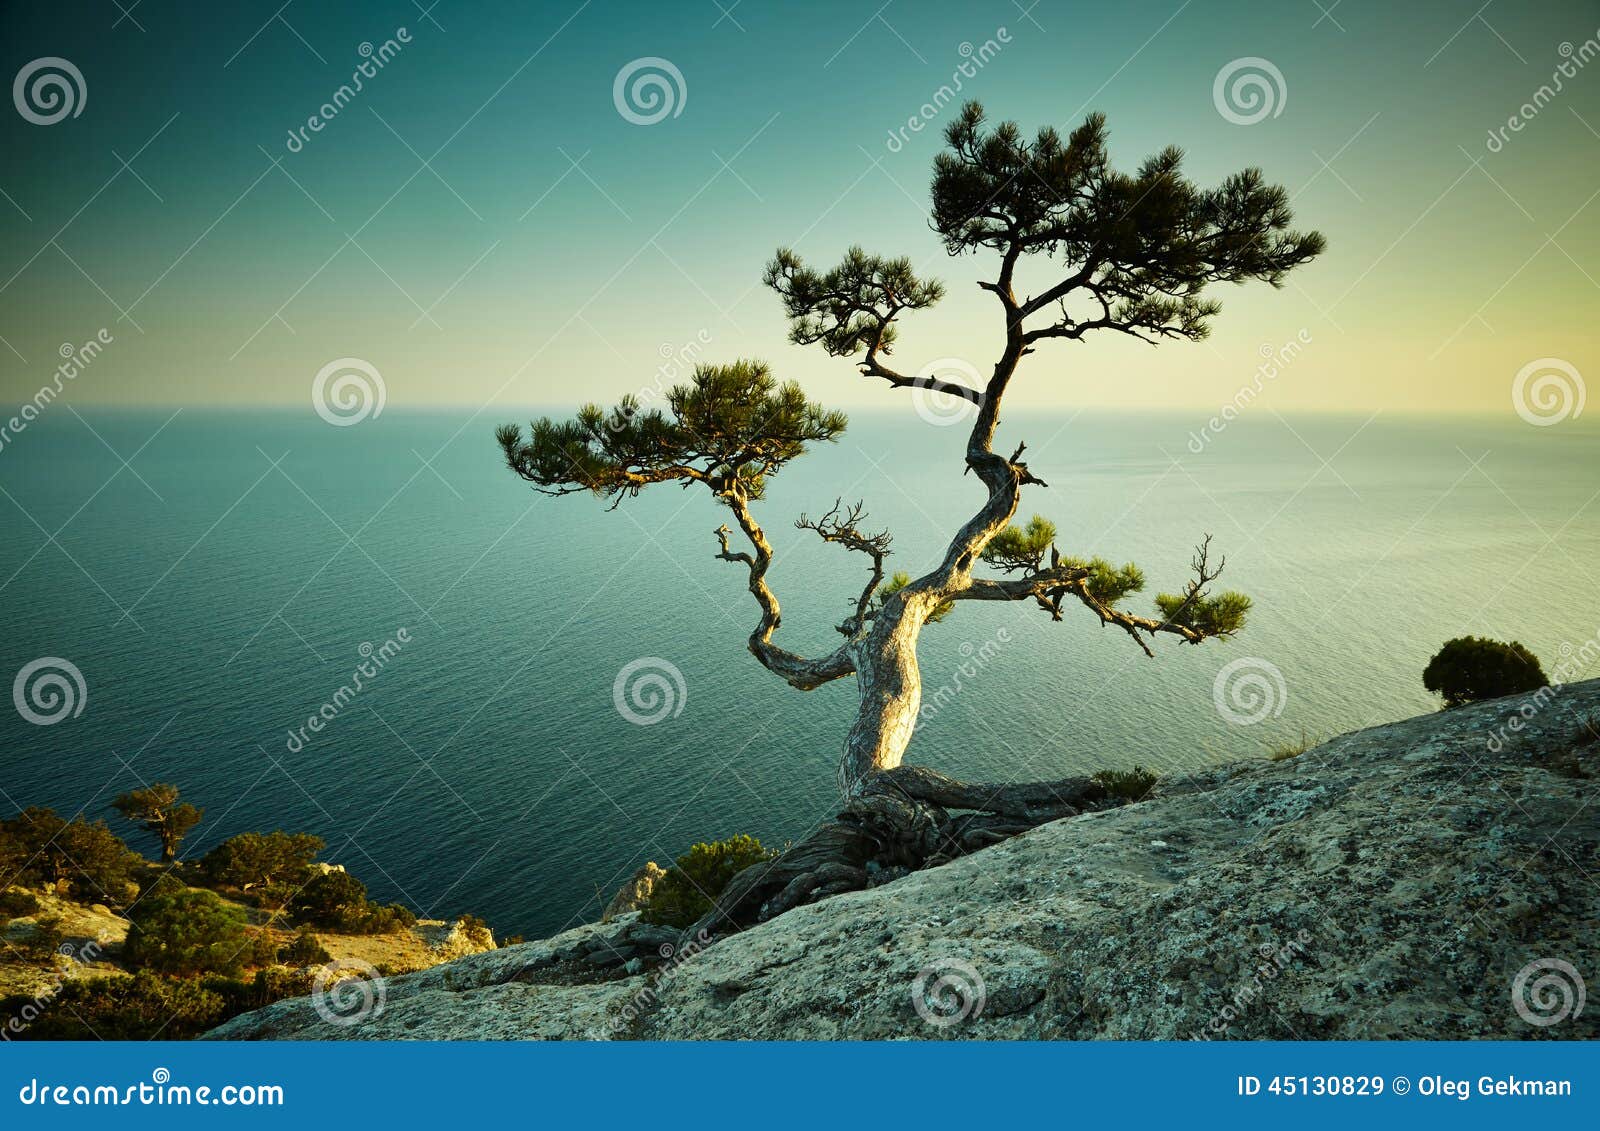 tree and sea at sunset. crimea landscape